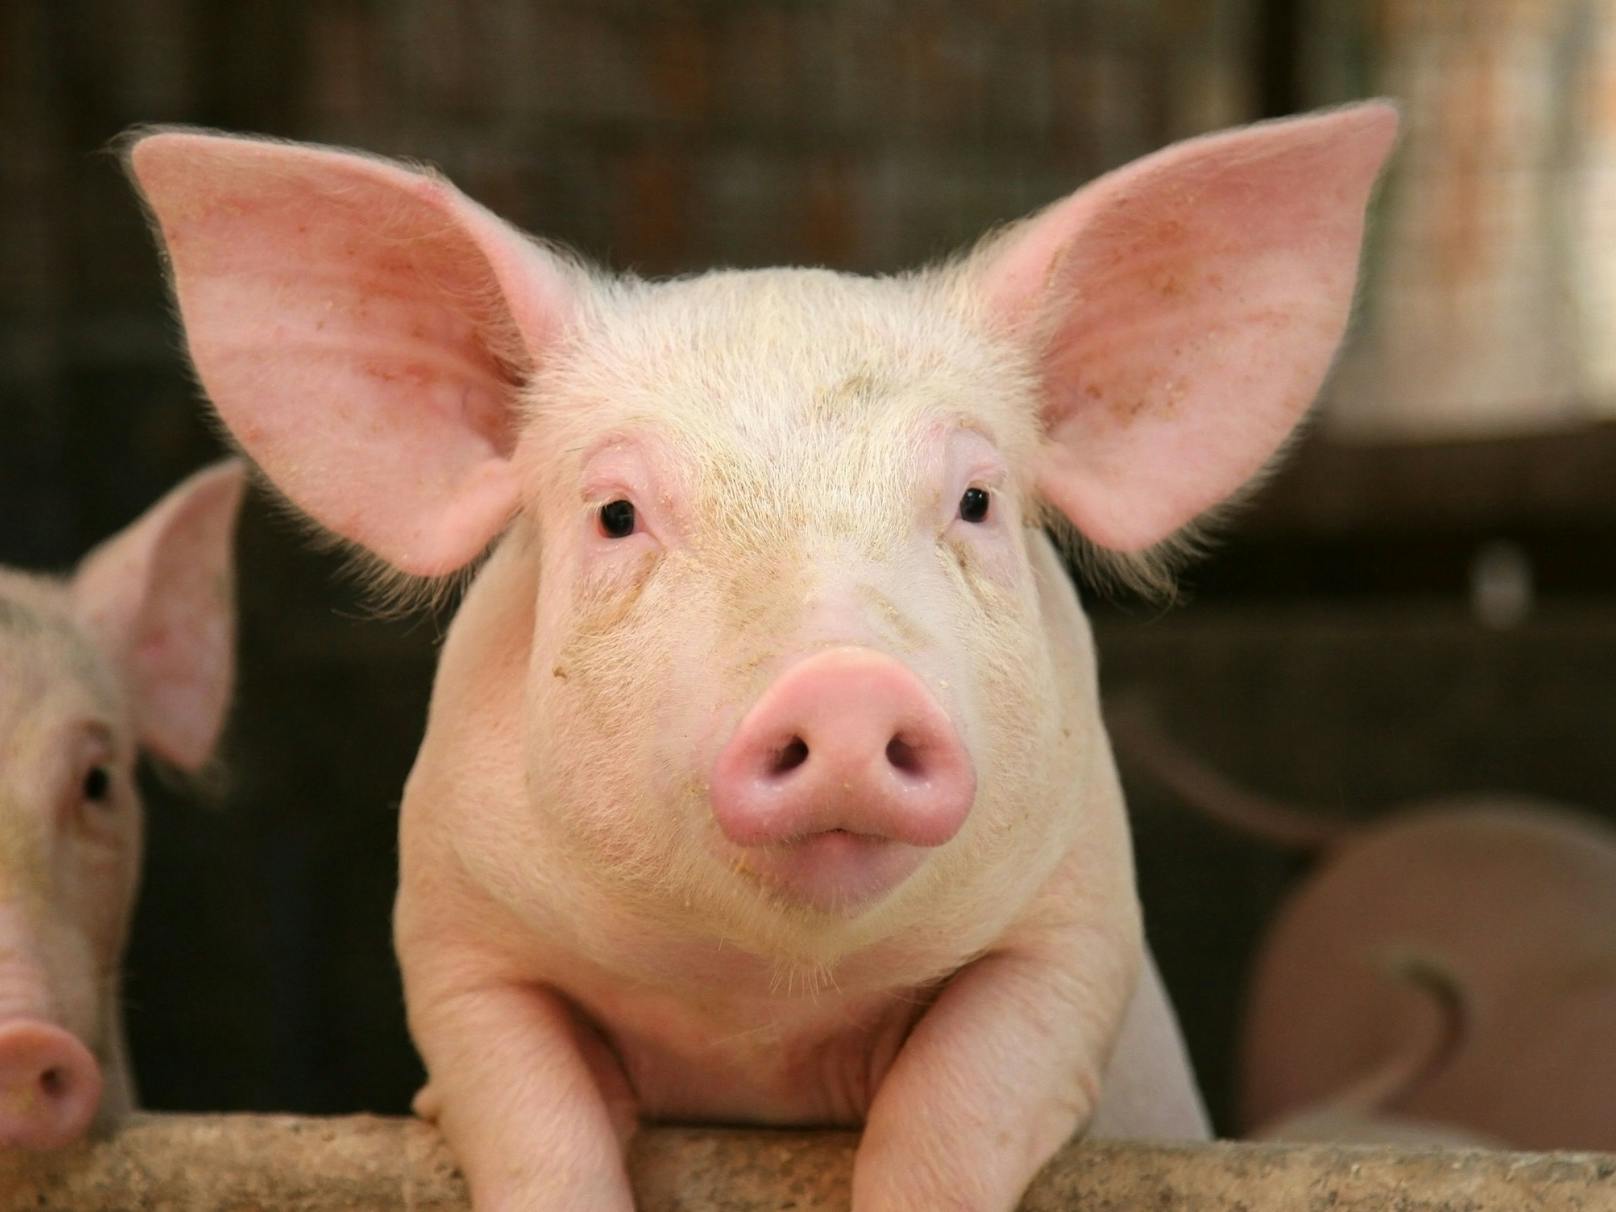 Niemand möchte Fleisch aus Tierleid auf dem eigenen Teller. Aber derzeit ist für Konsumenten in Österreich mangels Kennzeichnungspflicht nicht erkennbar, ob etwa ein Schwein auf Vollspaltenboden leiden musste.